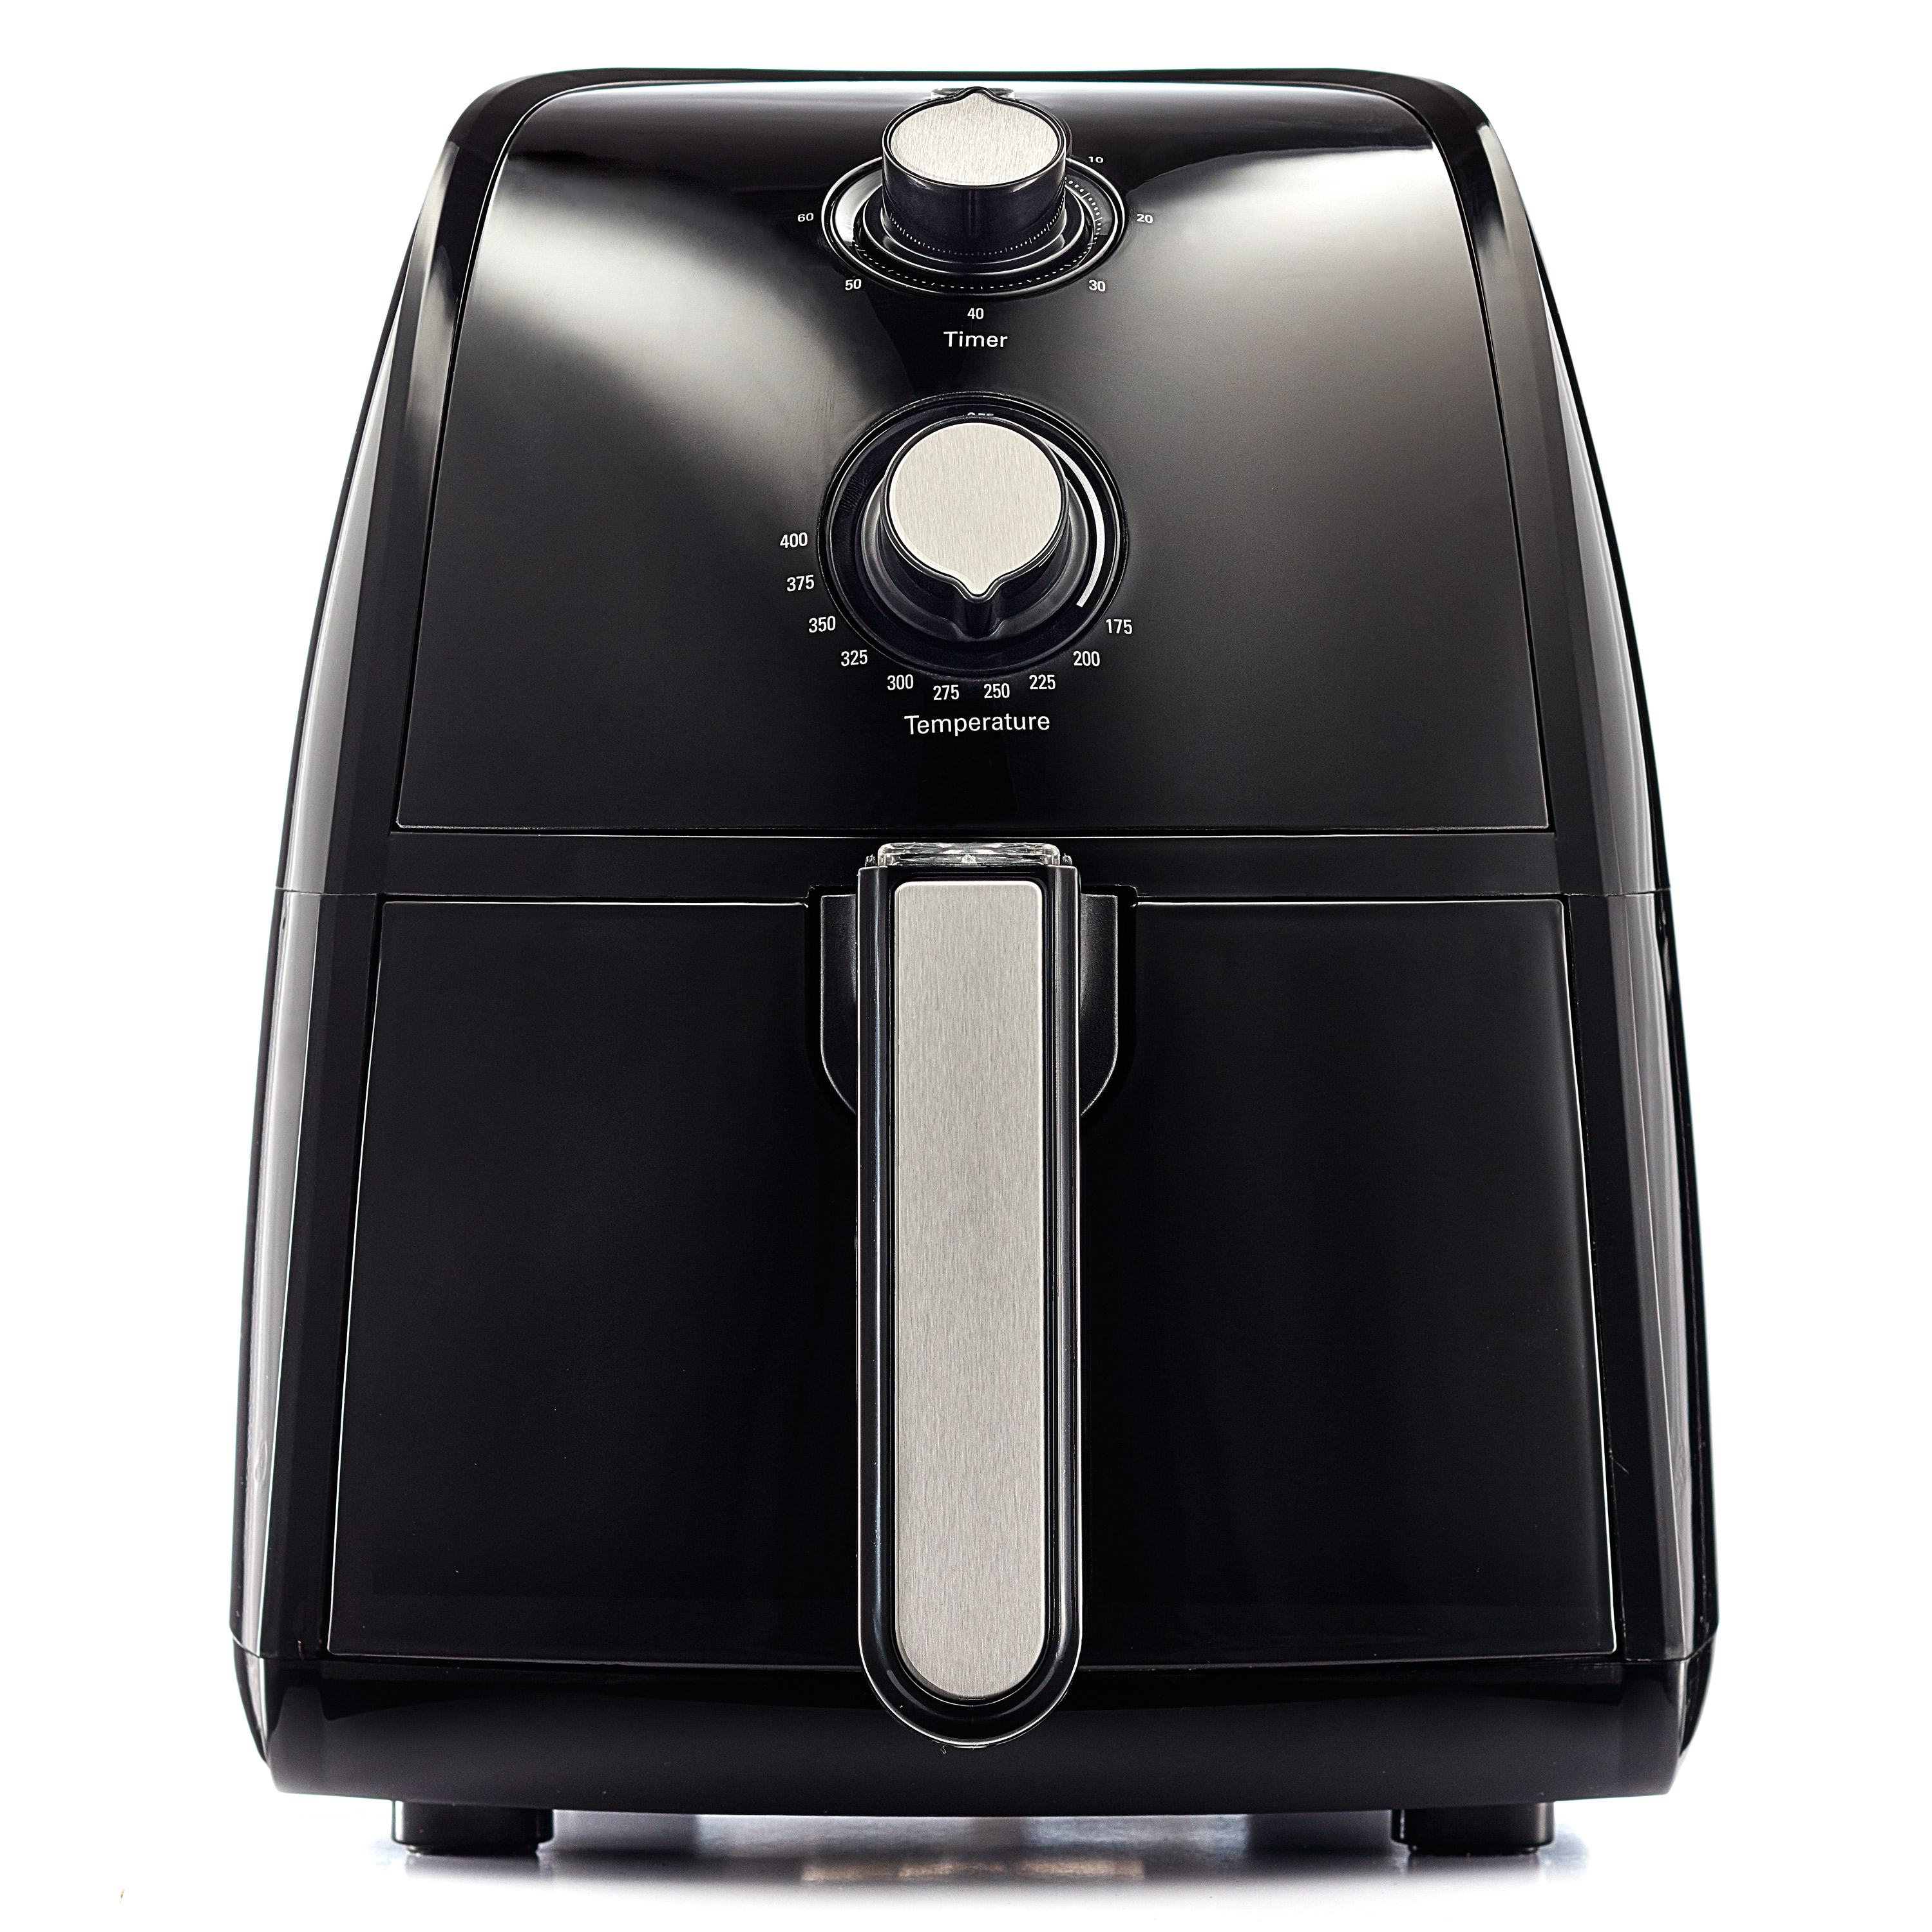  Black 2 Quart Air Fryer from Bella : Home & Kitchen